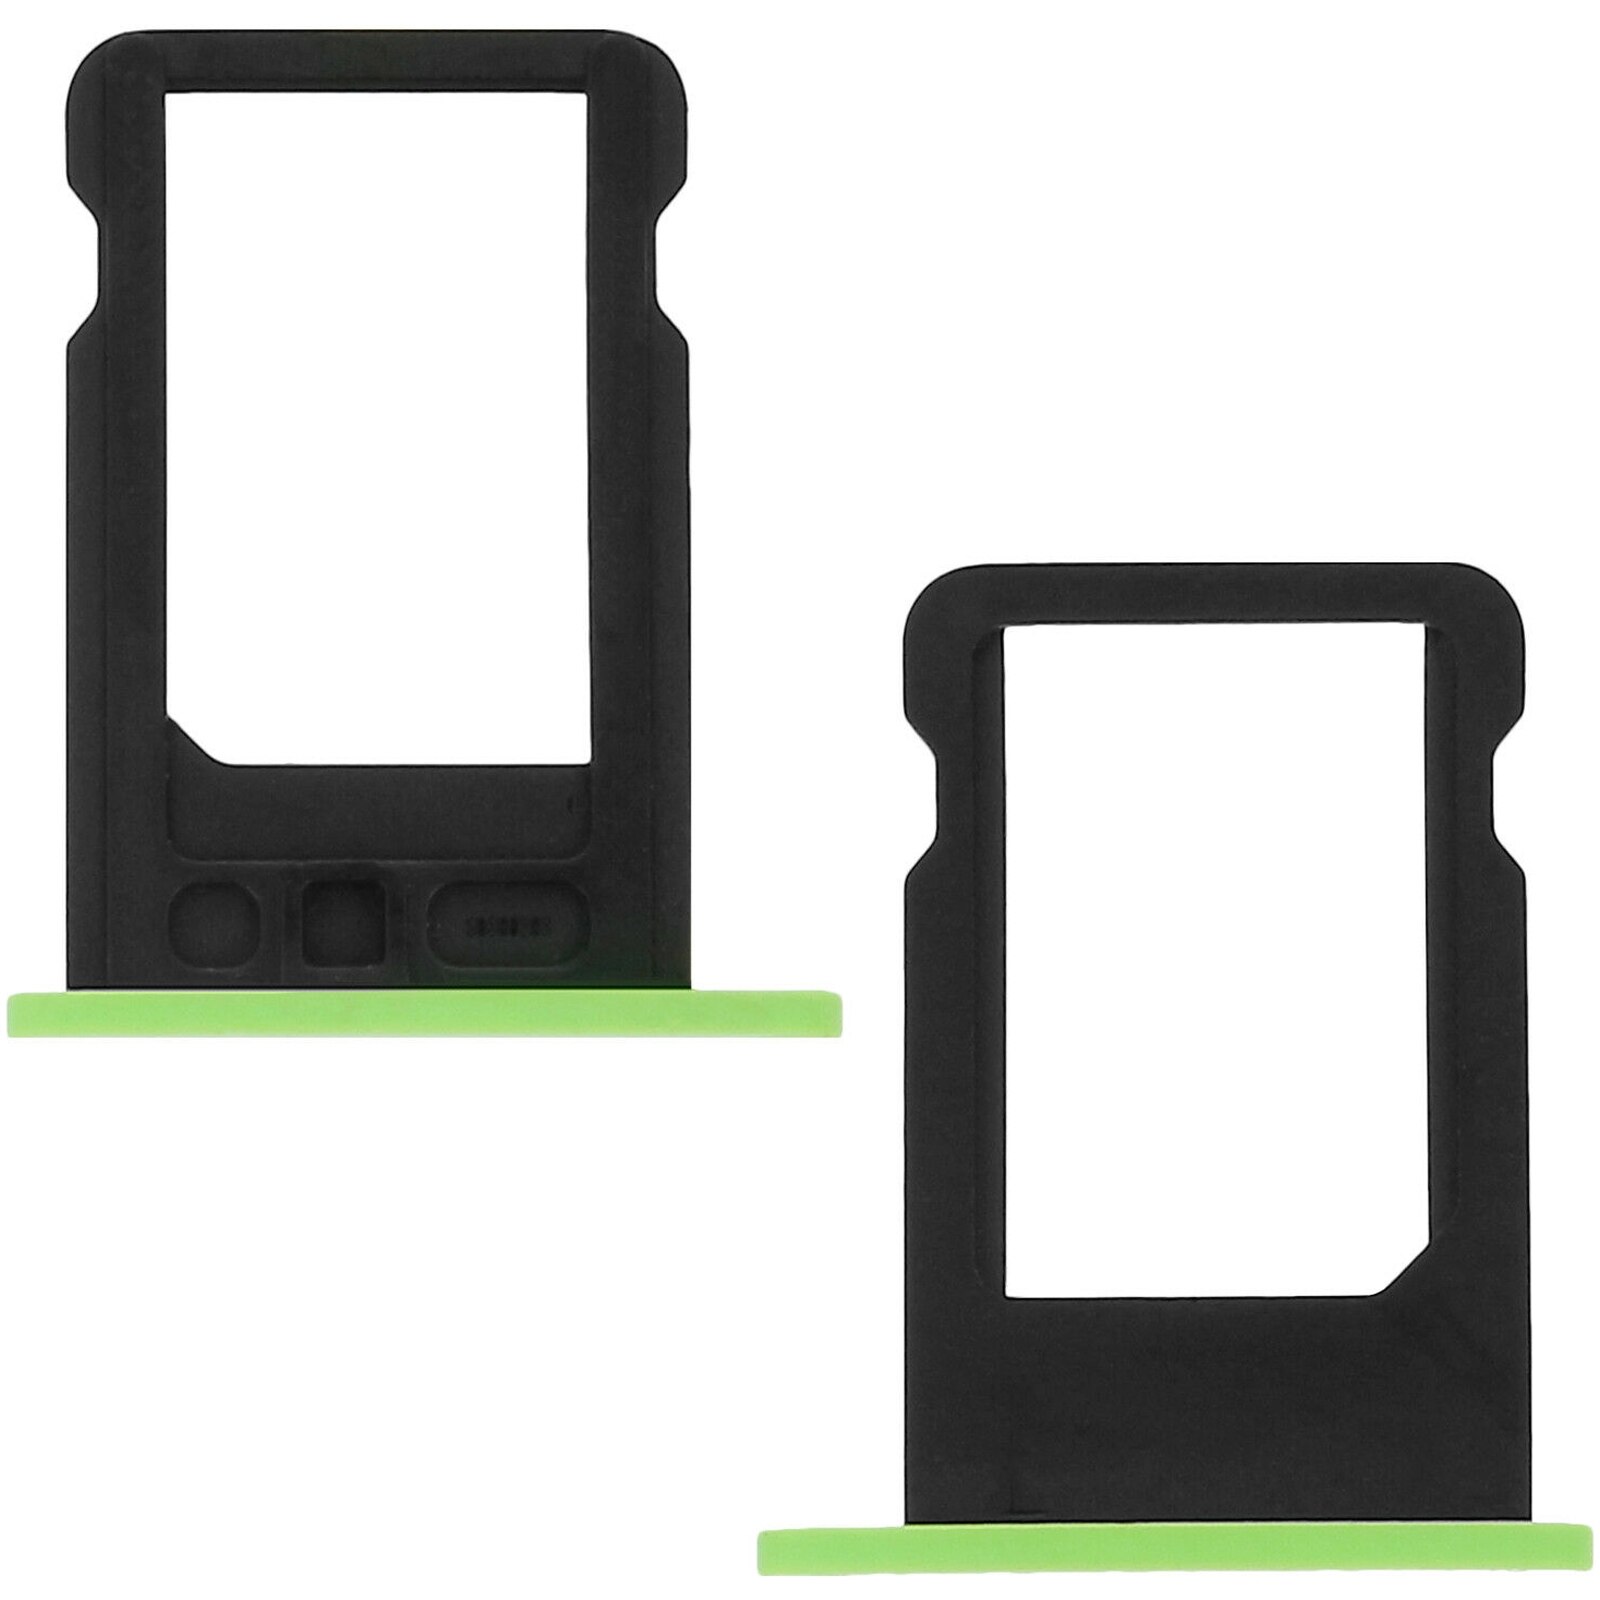 Sim Kaart Lade Voor Iphone 5C Groen